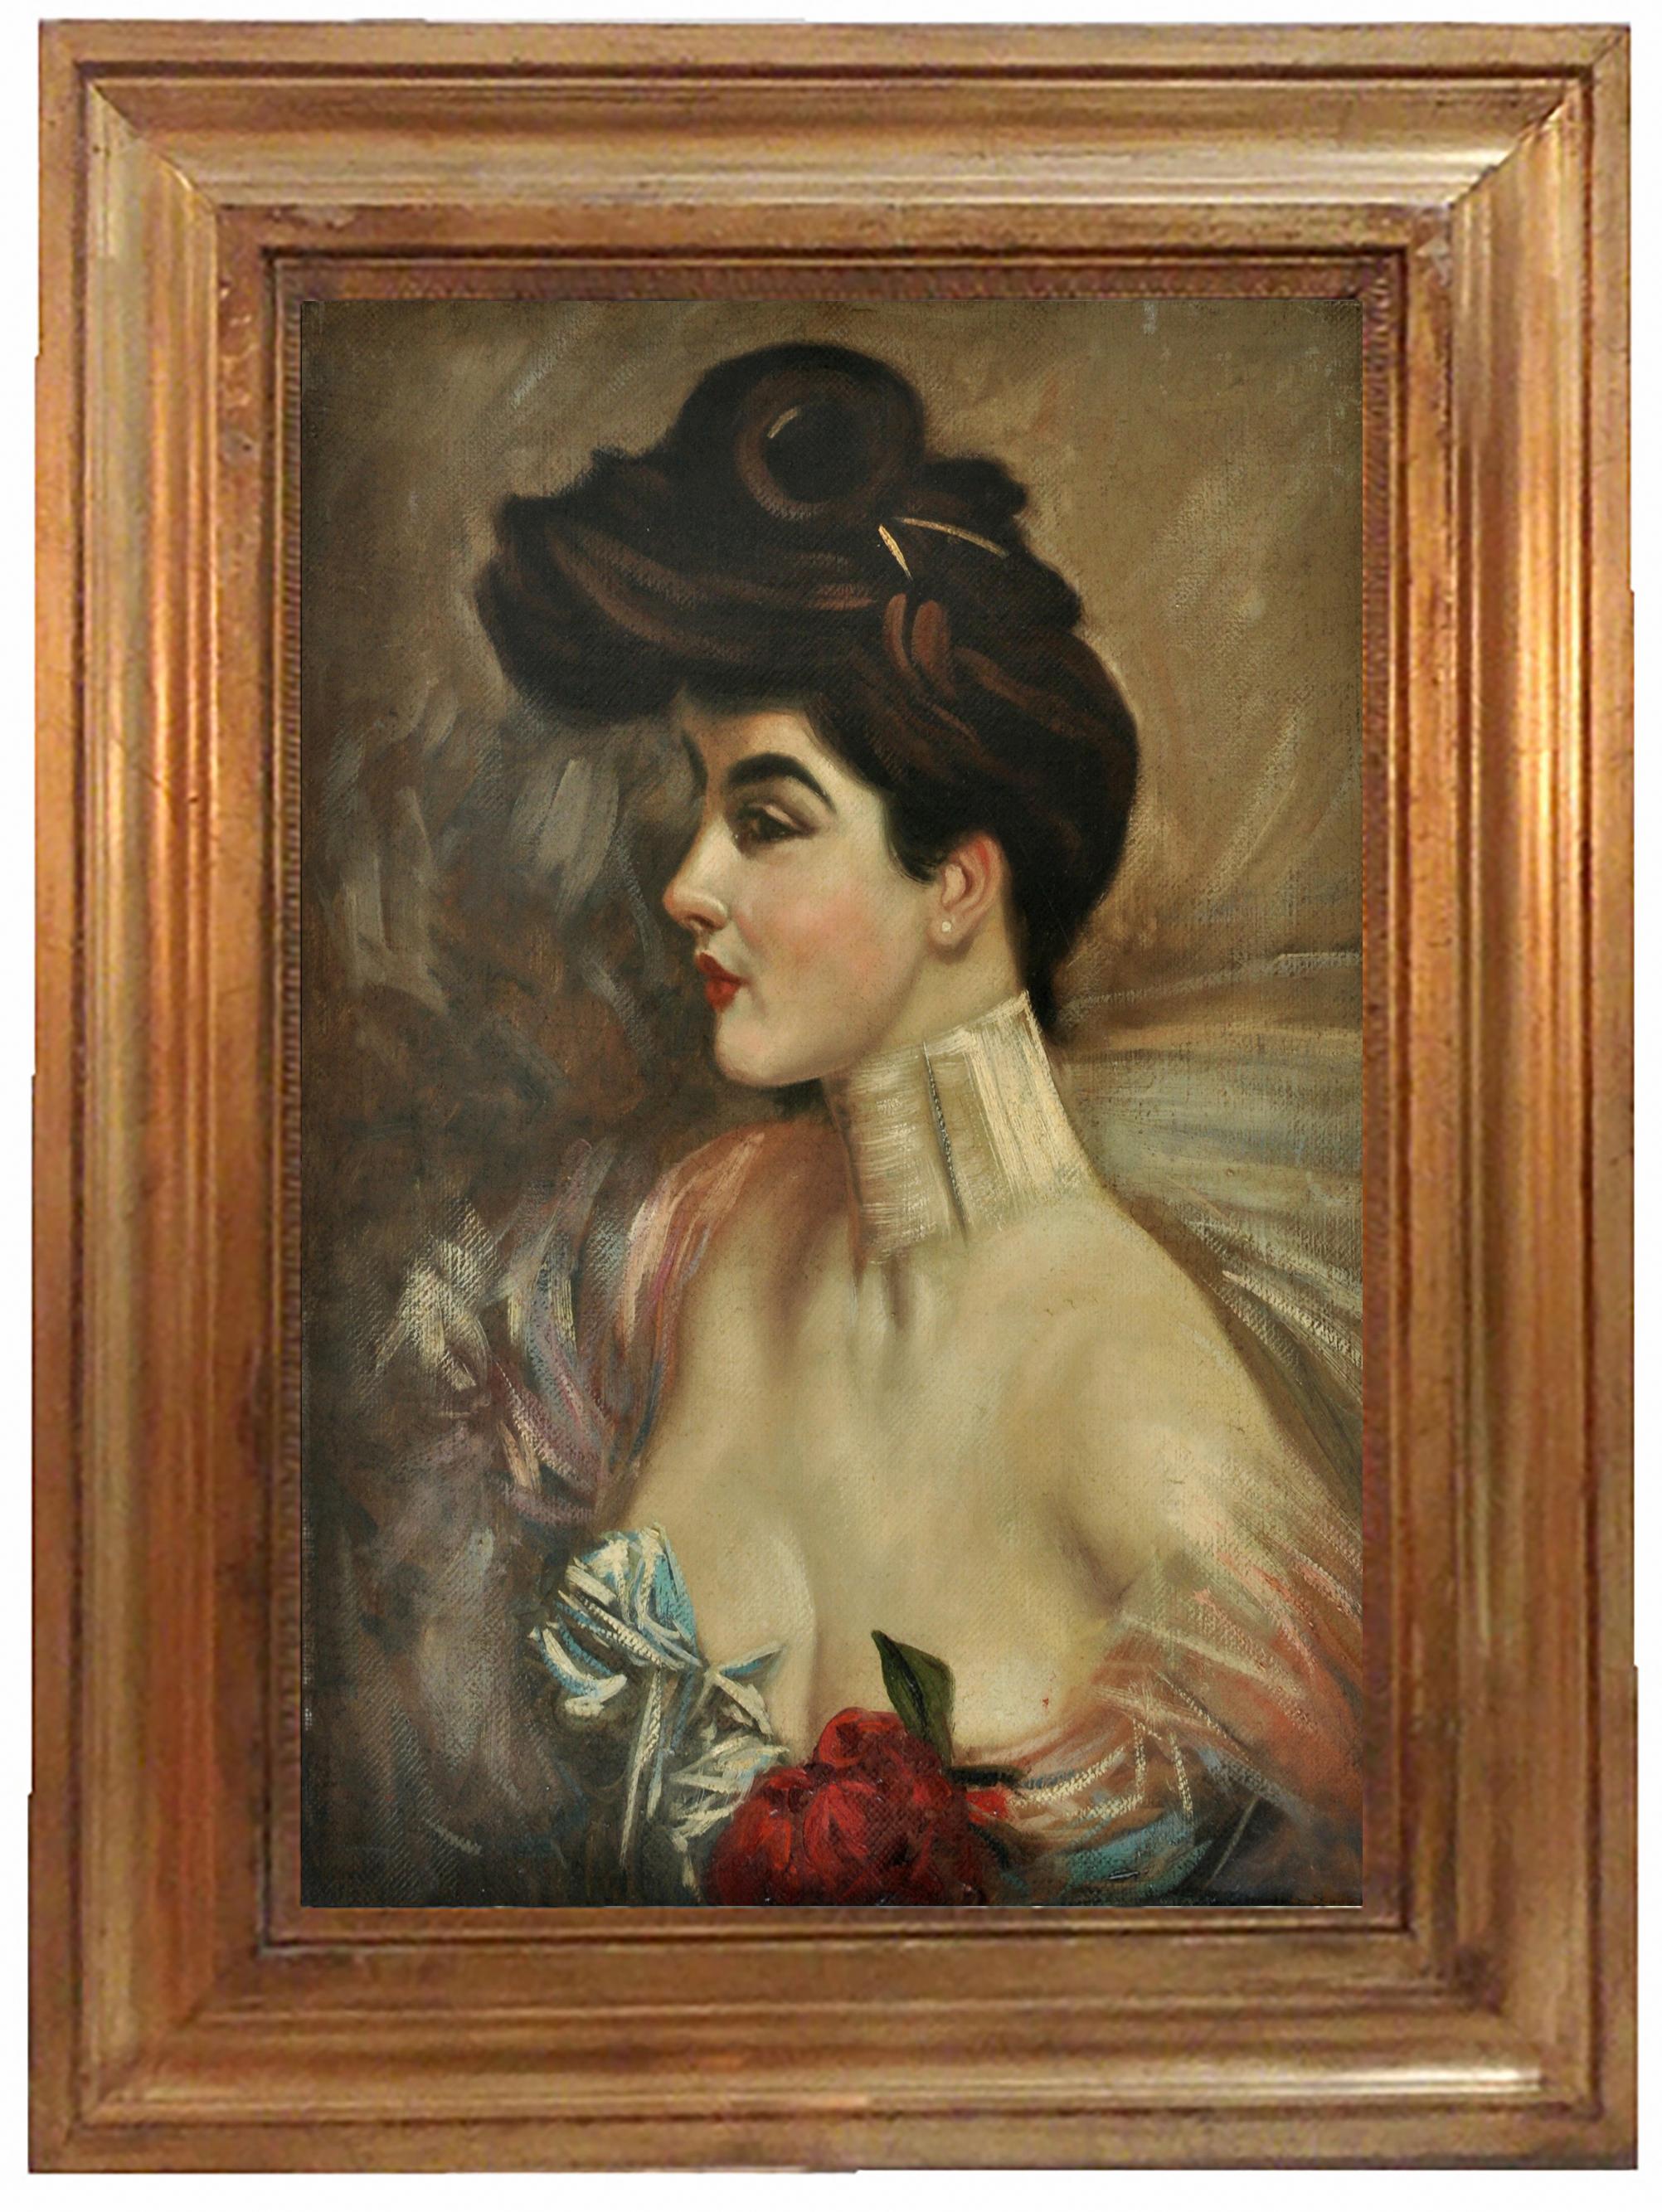 LADY'S PORTRAIT - À la manière de G. Boldini - Peinture à l'huile sur toile italienne